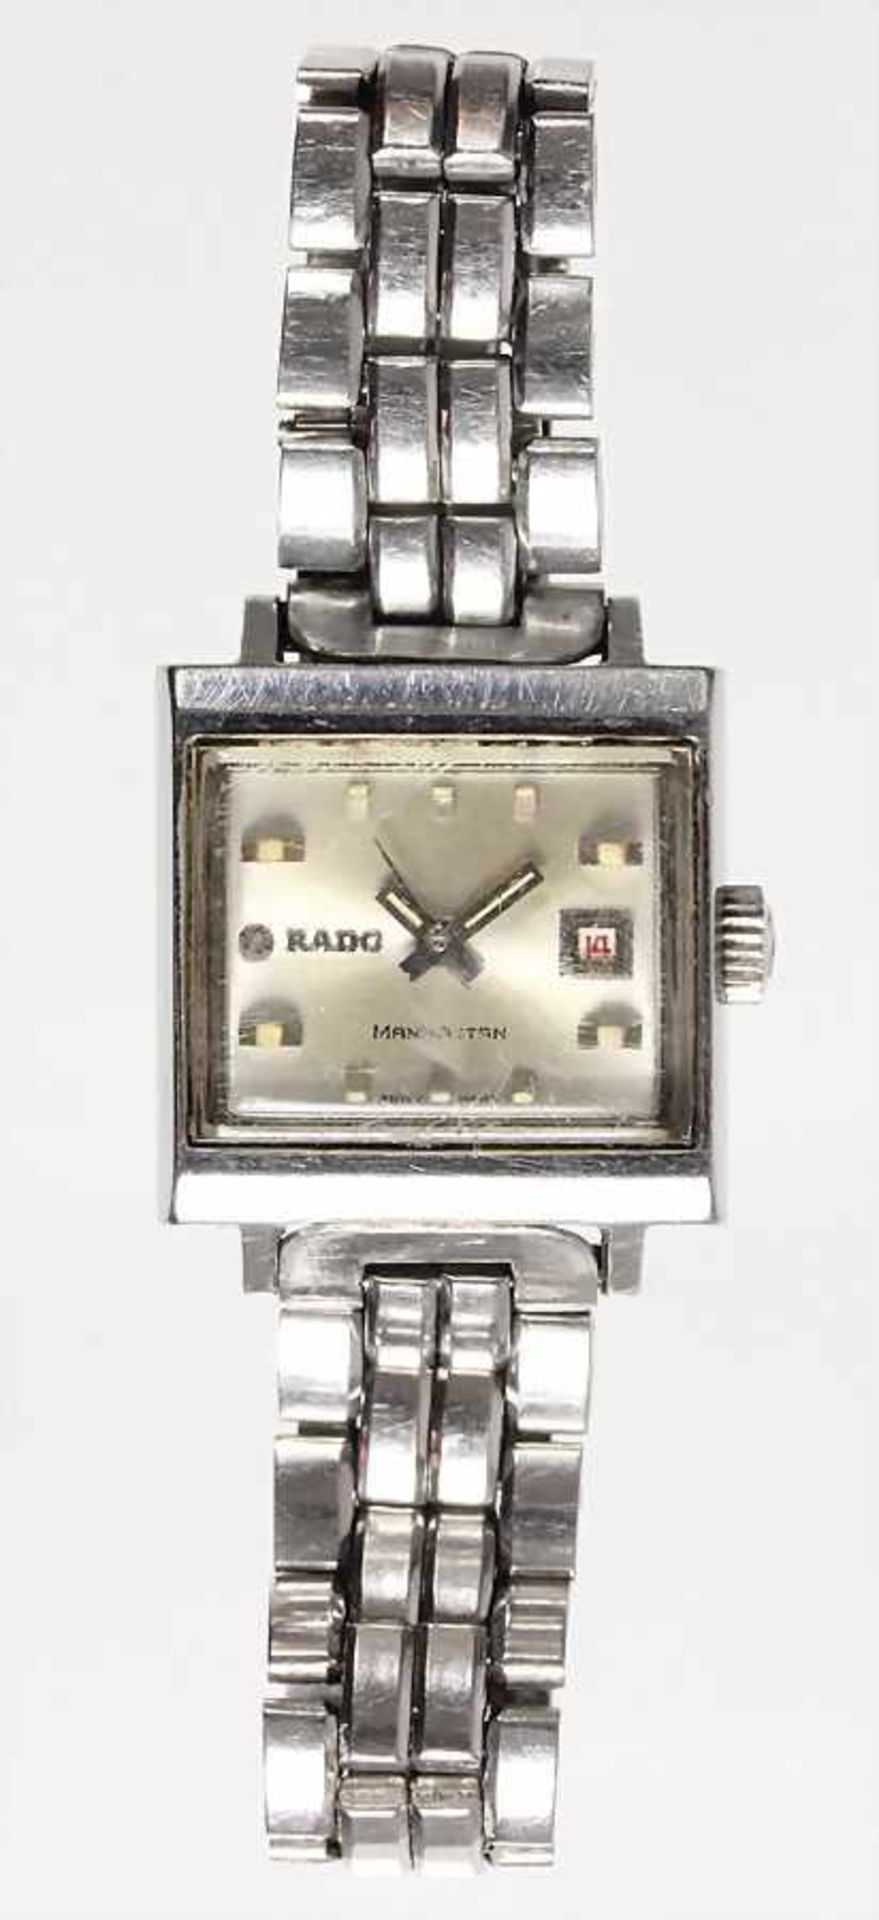 Damen-Armbanduhr VINTAGE, "RADO-MANHATTEN", Schweiz 1970er Jahre, Automatik, Stahl, Dat. Fenster auf